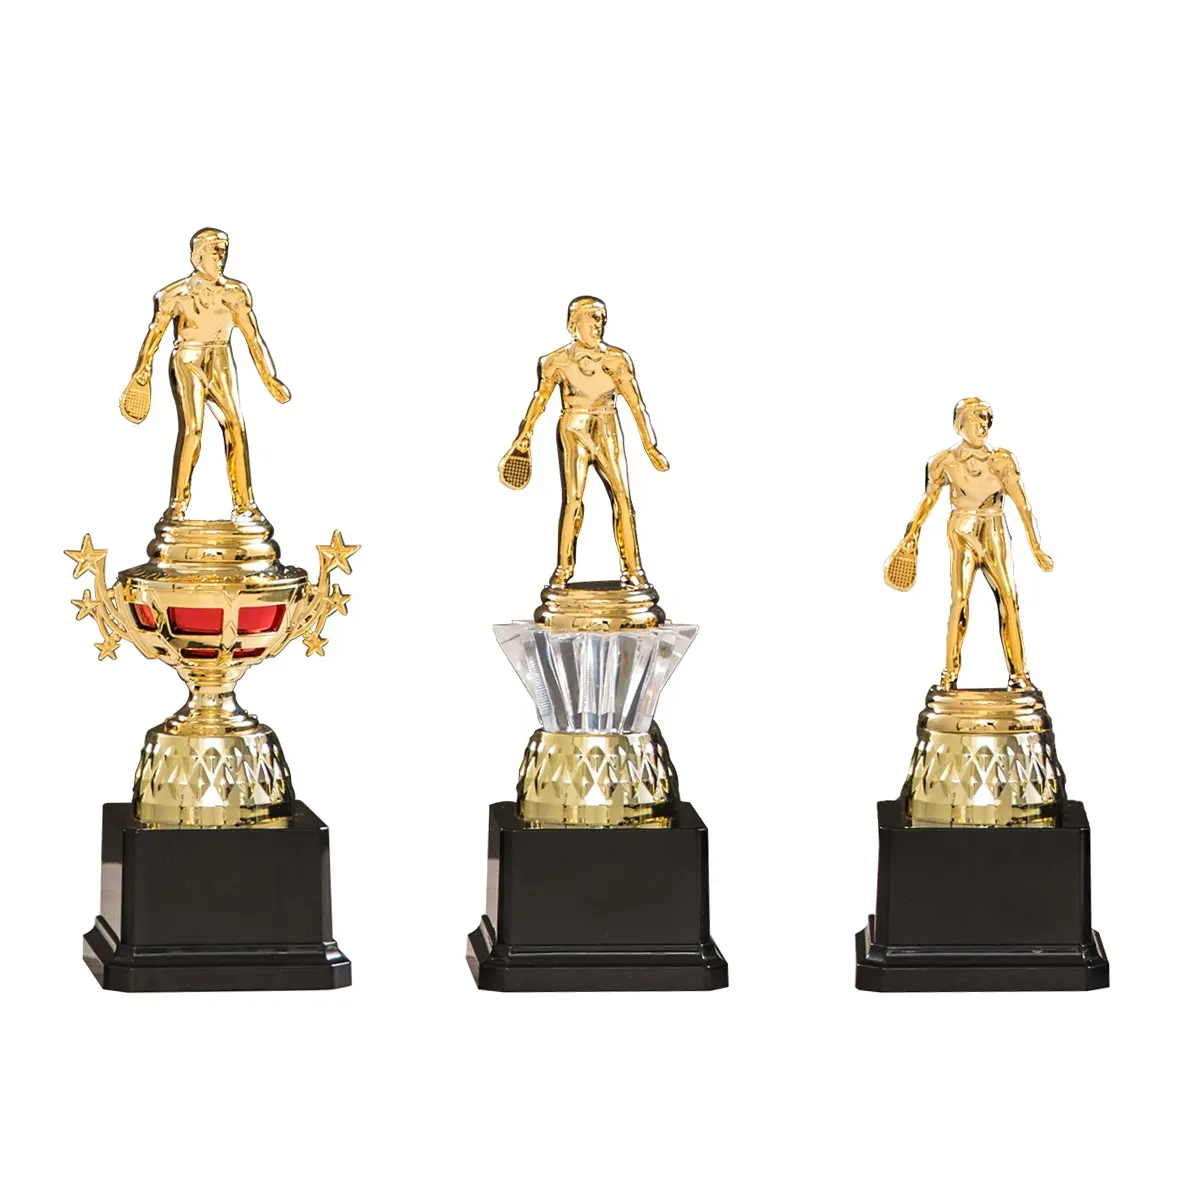 Figuras de trofeos deportivos de decoración placas de medallas de plástico para las industrias de educación y seguros Automotrices